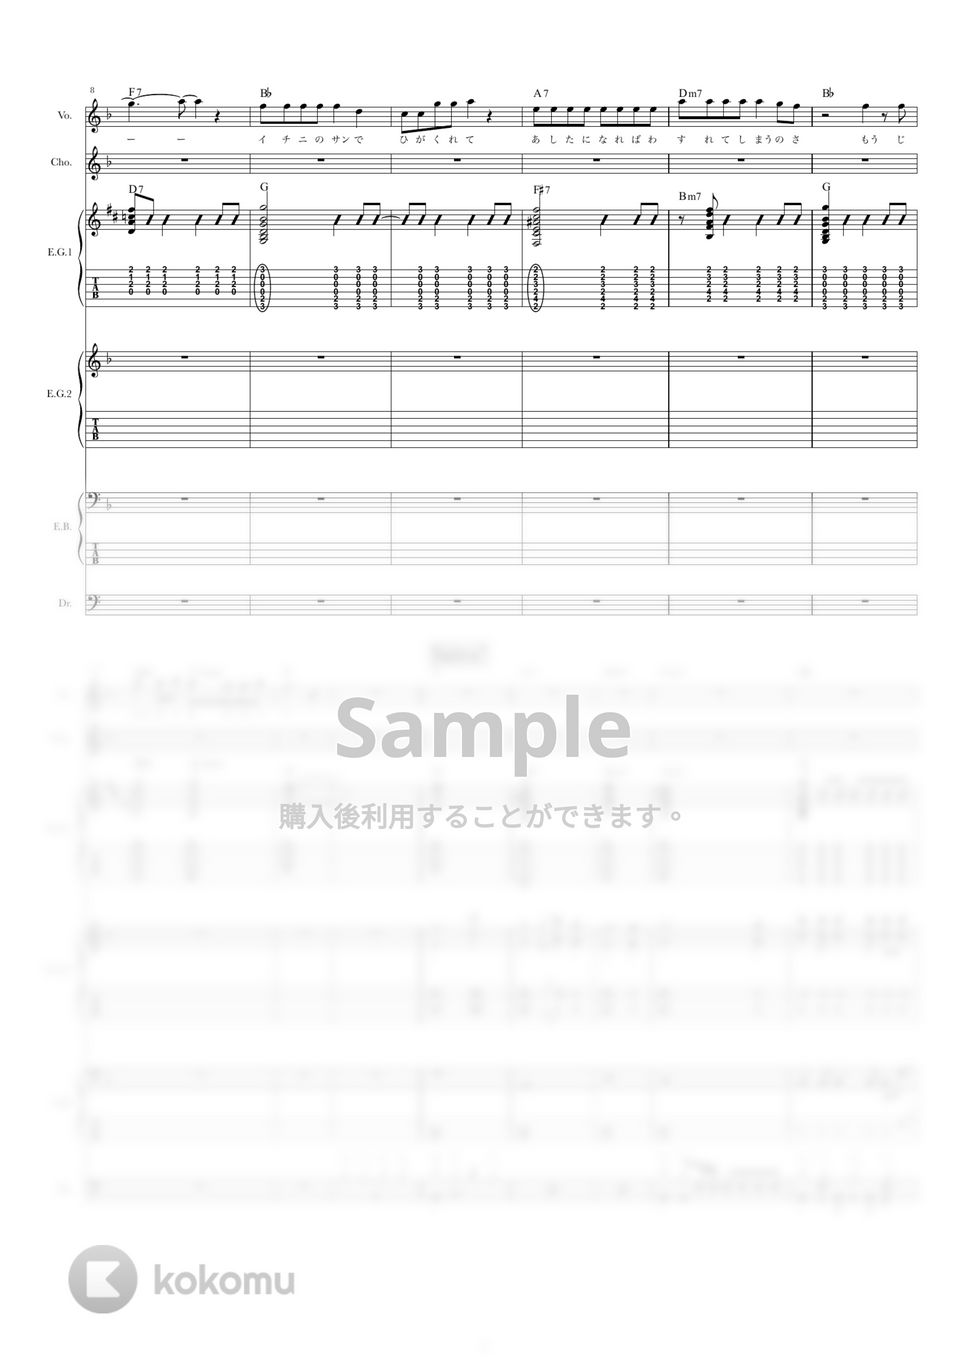 Hump Back - 星丘公園 (バンドスコア) by TRIAD GUITAR SCHOOL